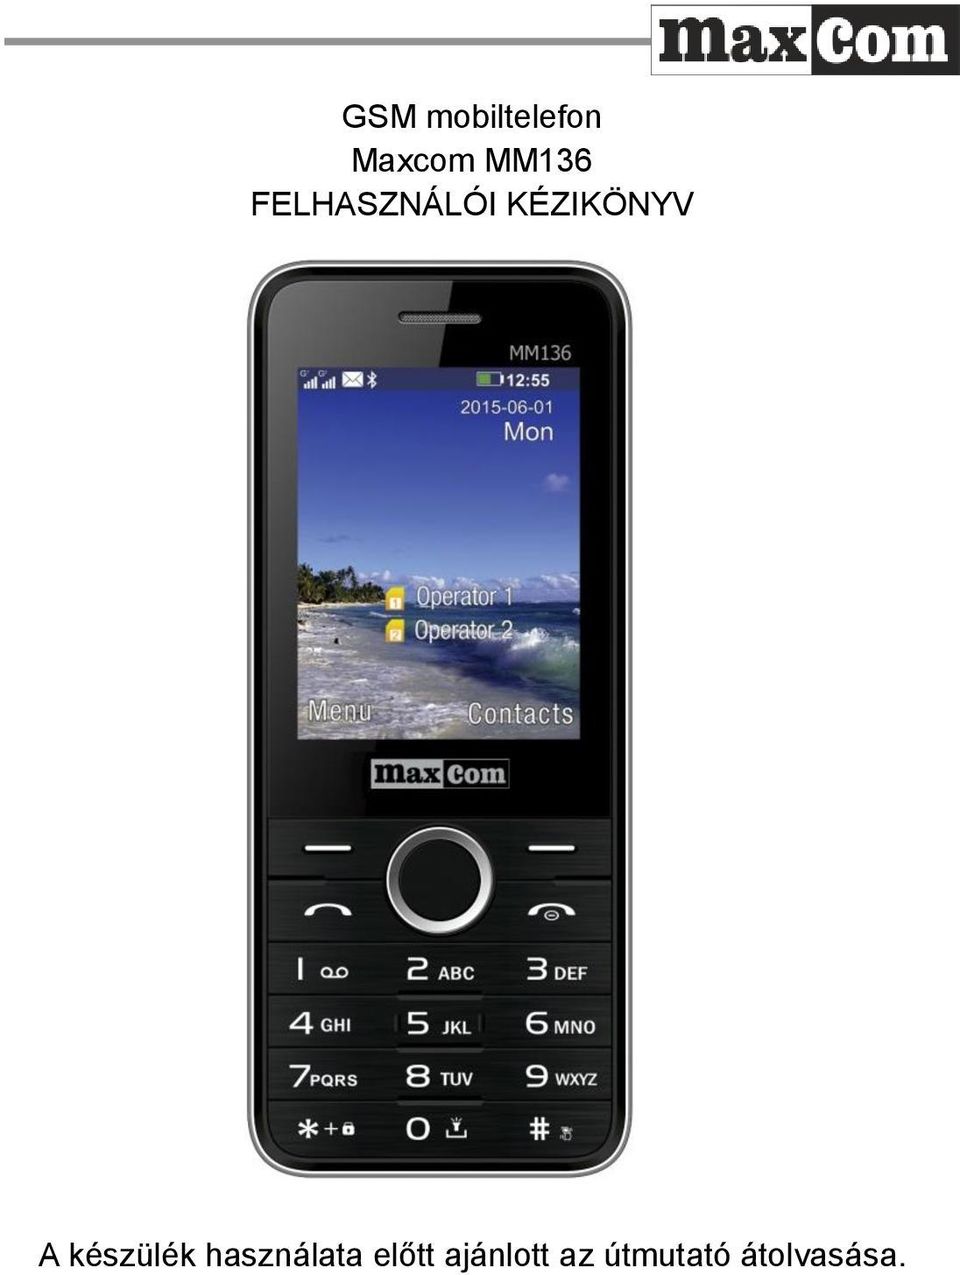 GSM mobiltelefon Maxcom MM136 FELHASZNÁLÓI KÉZIKÖNYV - PDF Ingyenes letöltés